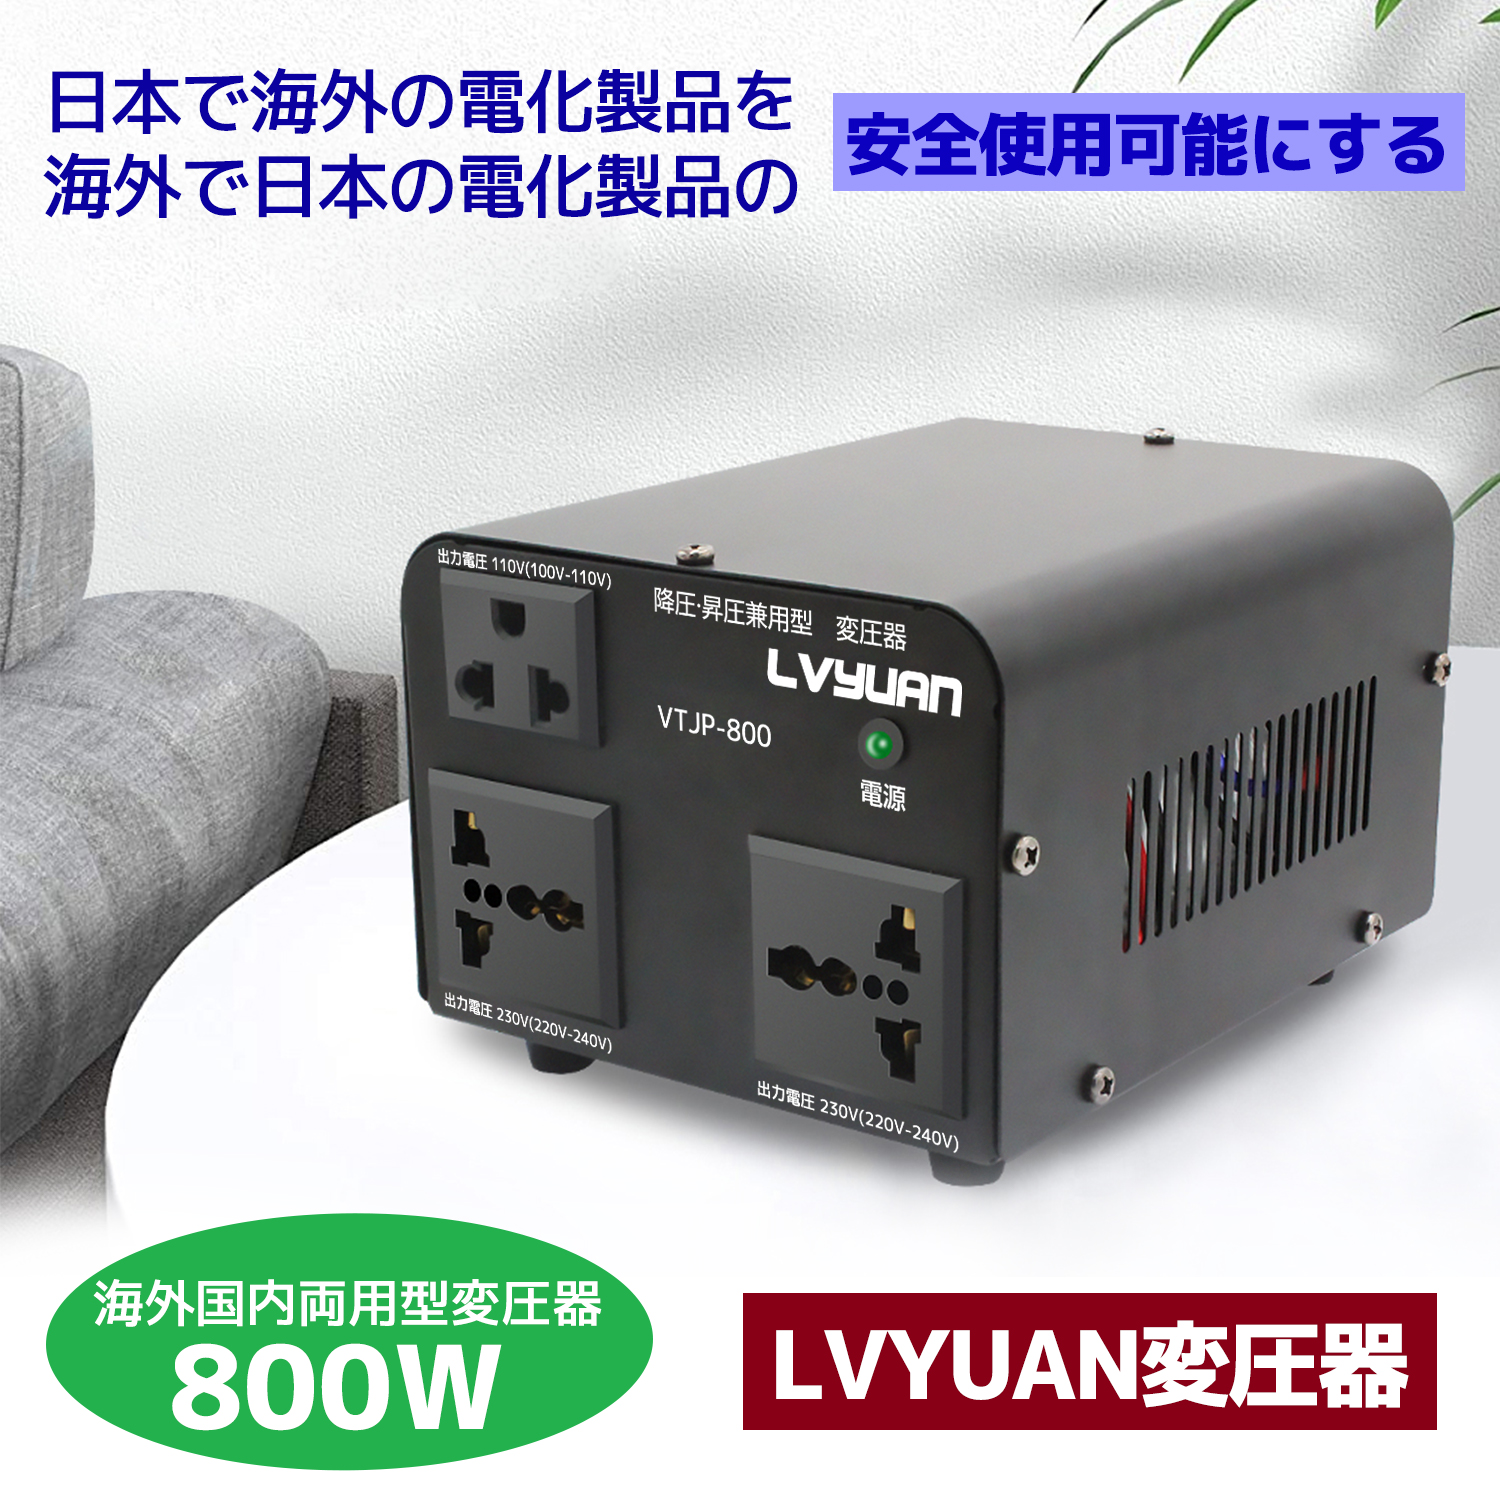 海外国内両用型変圧器 800W アップトランス ダウントランス 降圧